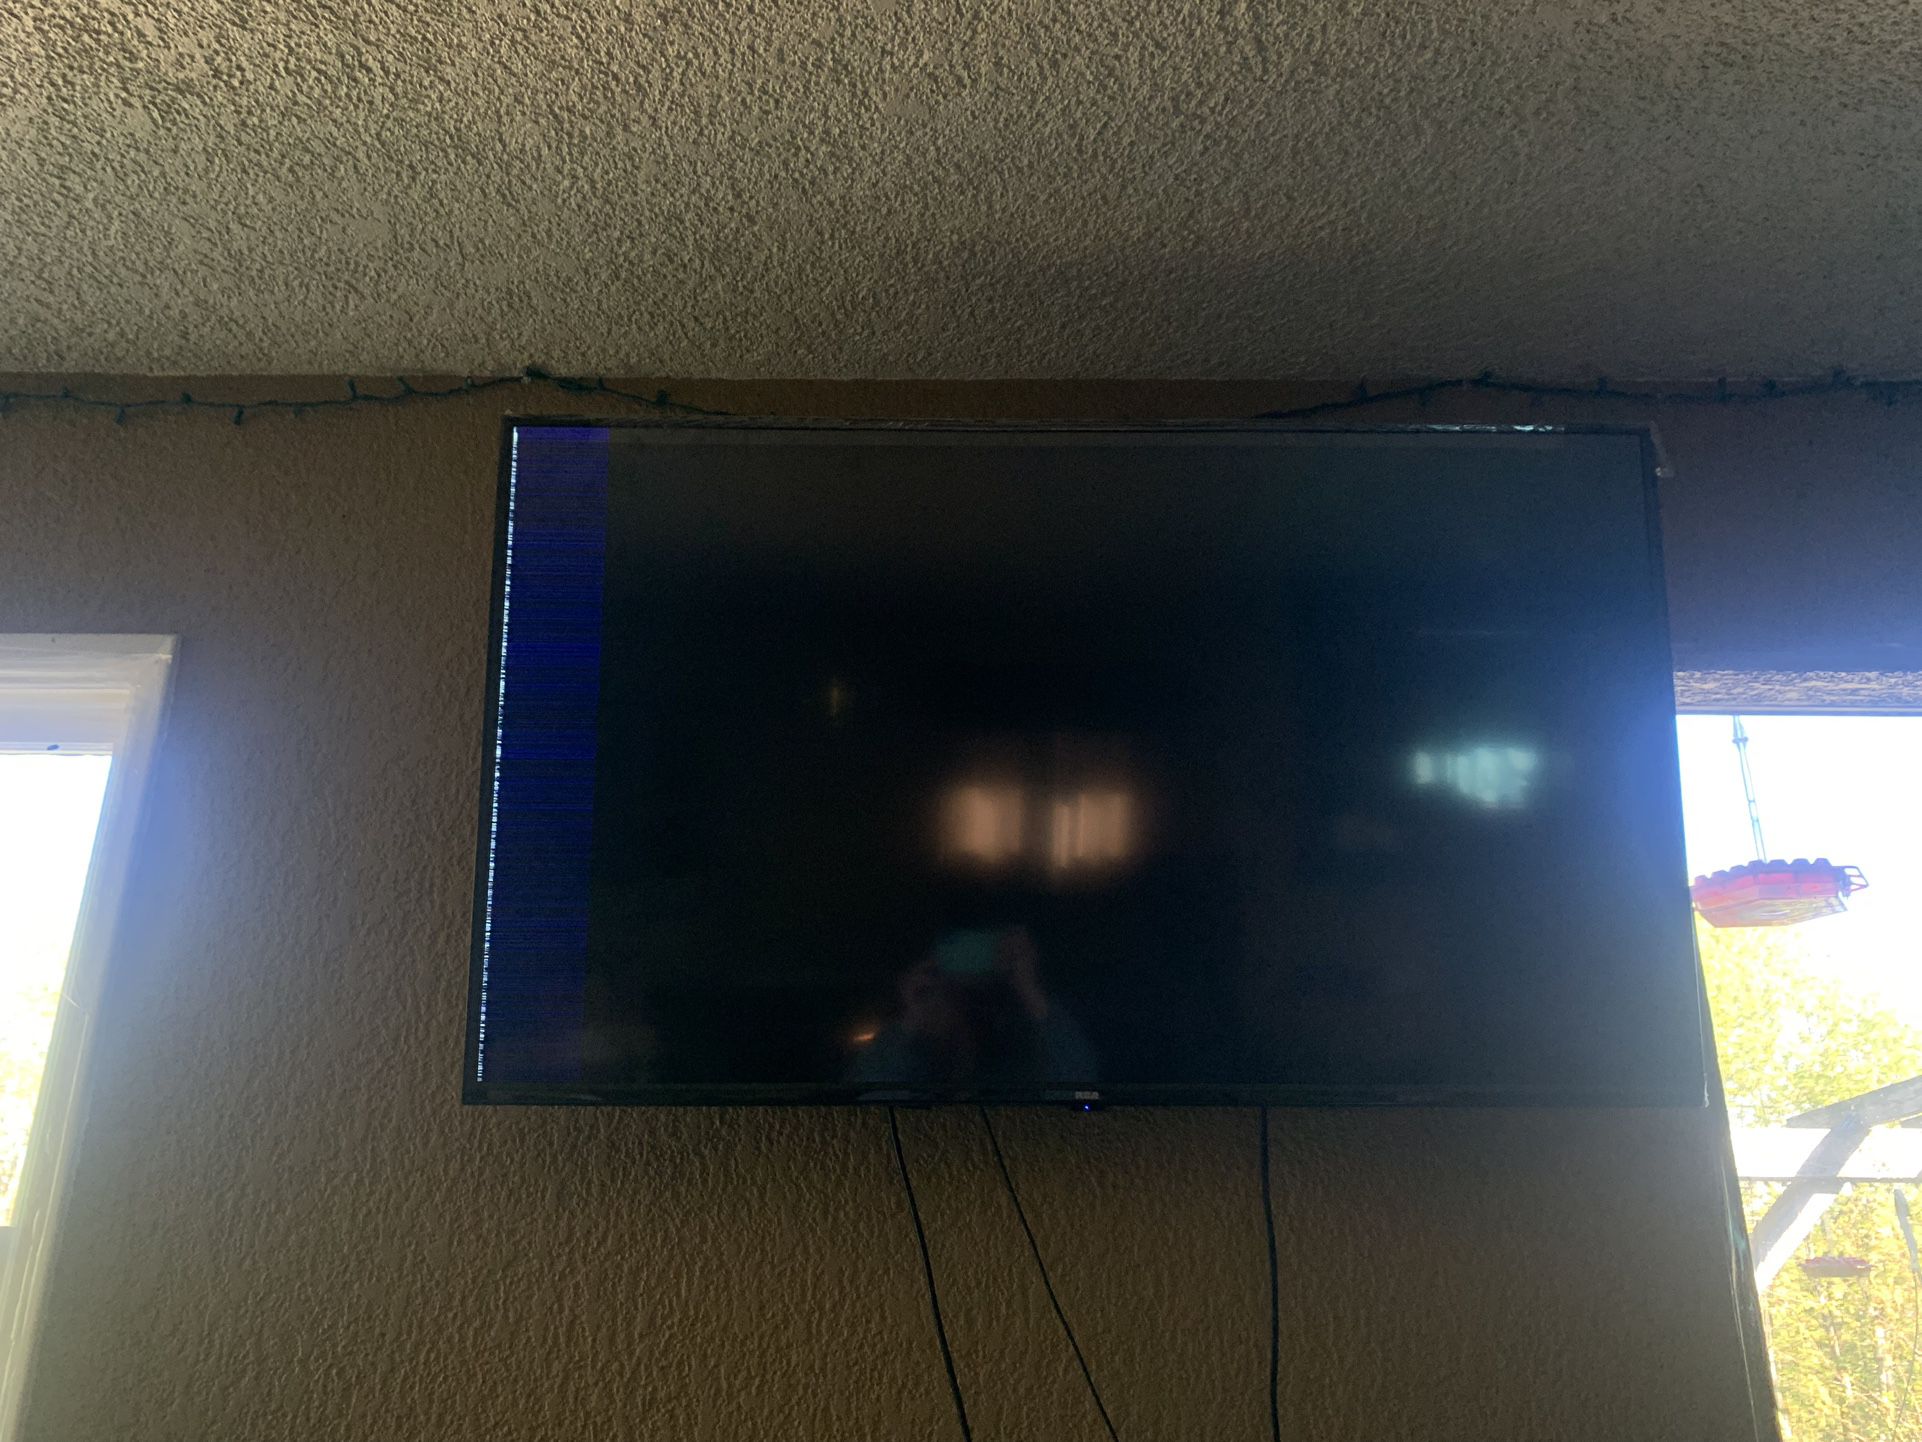 50” Flat Screen TV